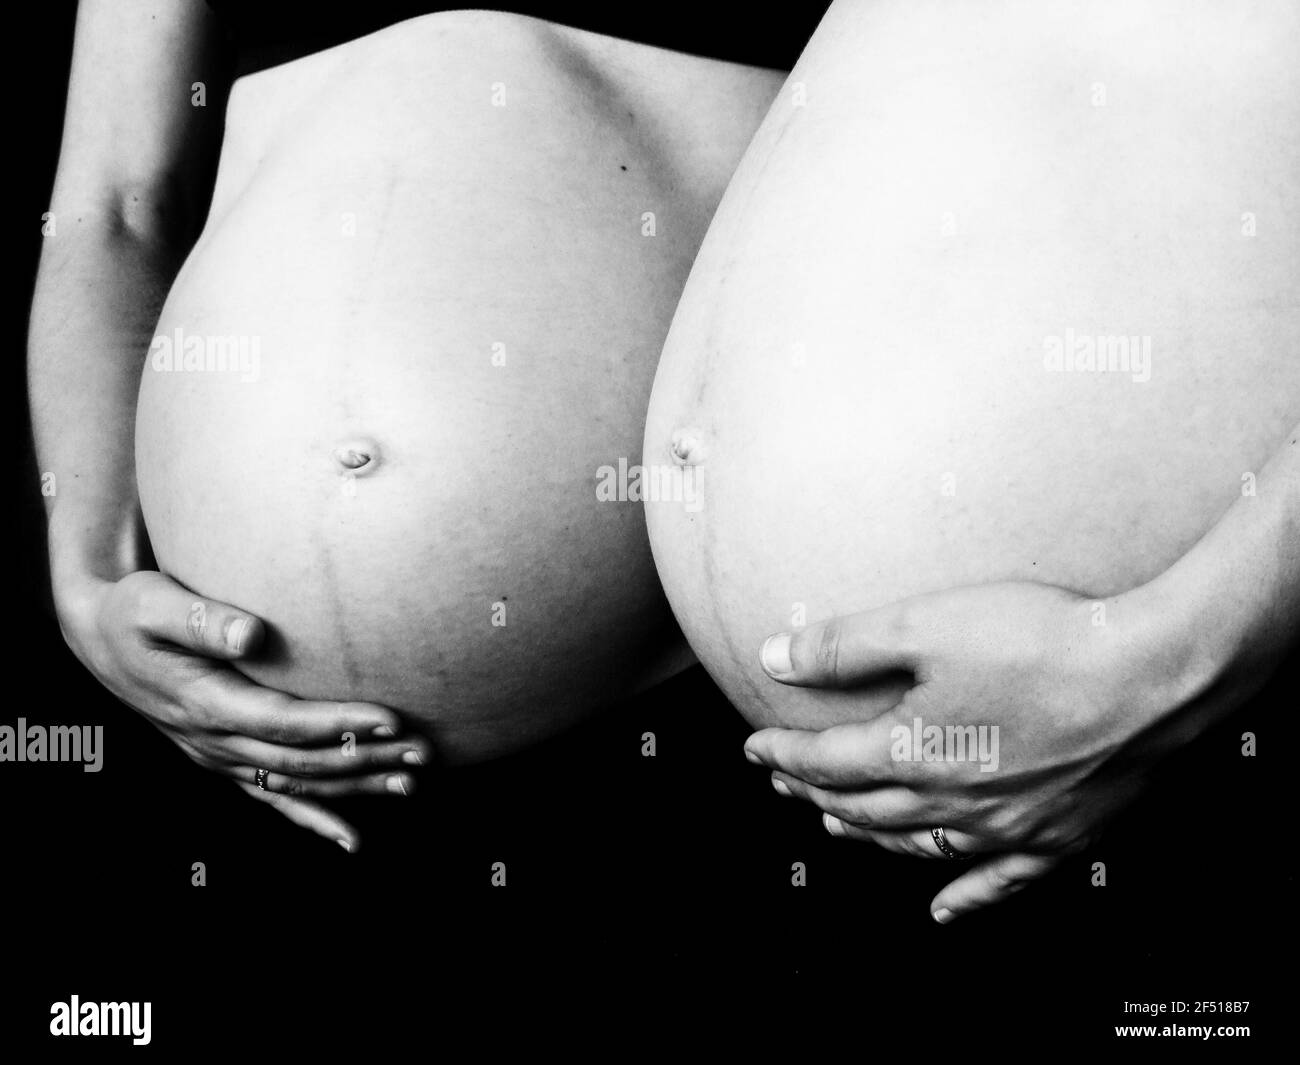 Réflexion du ventre enceinte dans le miroir en b / n Banque D'Images